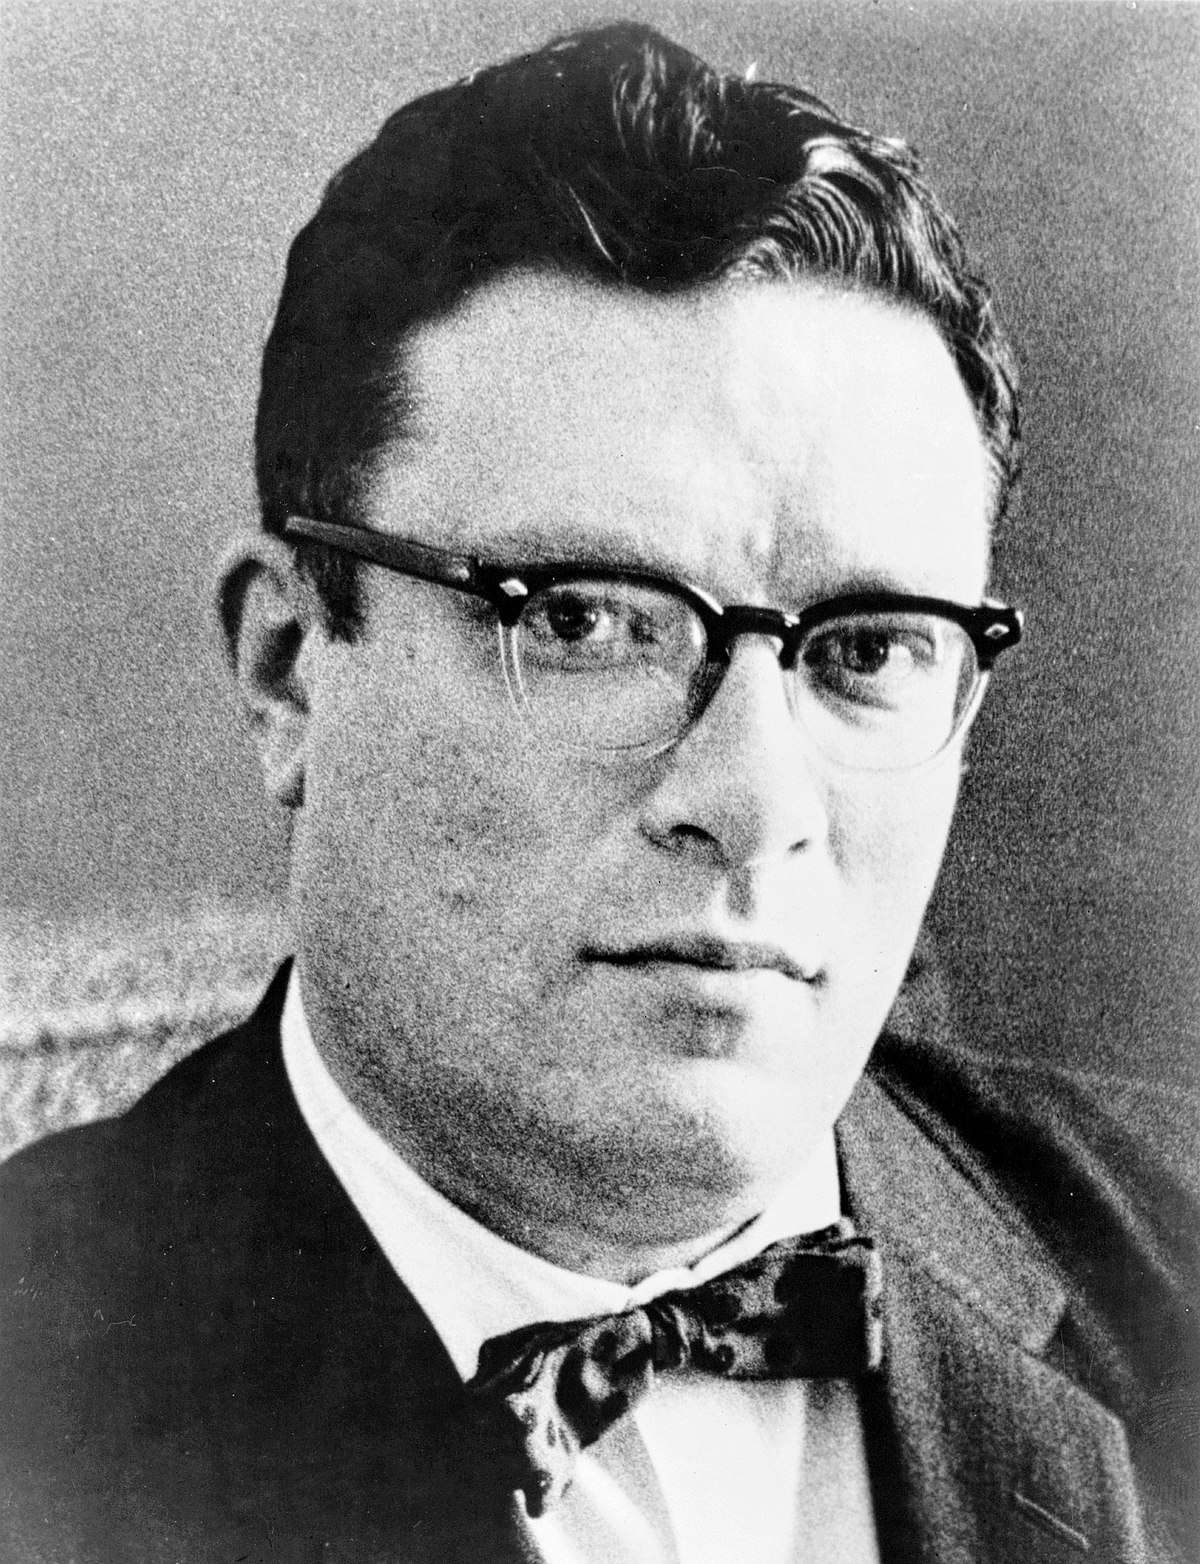 Portretfoto van Dr. Isaac Asimov
door Phillip Leonian voor de New York World-Telegram & Sun (voor 1959, geen copyrights https://guides.loc.gov/new-york-world-photographs/rights-reproductions)